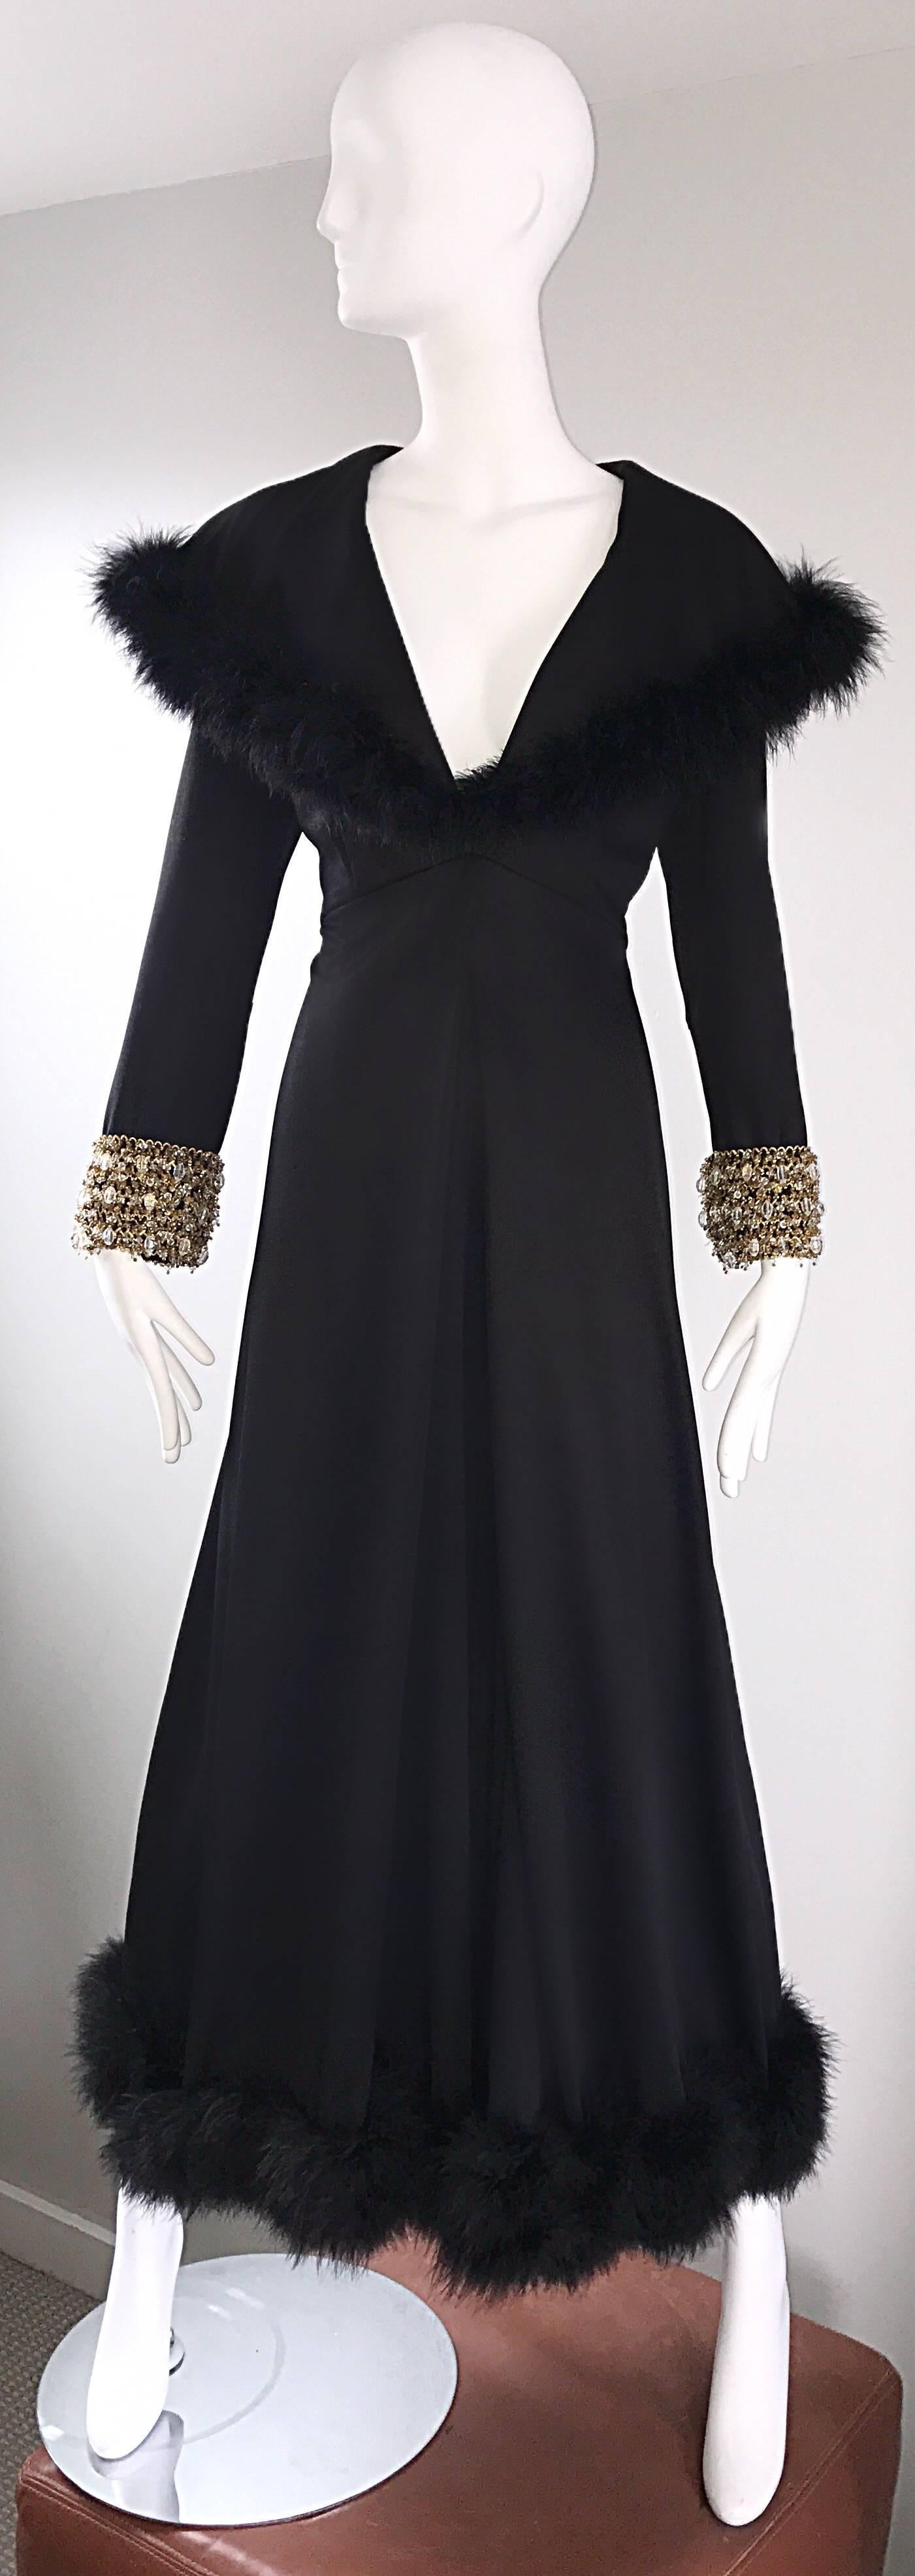 Absolut sensationeller schwarzer Couture-Jersey-Jumpsuit mit Palazzo-Beinen aus den 1970er Jahren! Ich weiß gar nicht, wo ich bei diesem Thema anfangen soll! Couture-Qualität, mit so viel Liebe zum Detail. Schwarze Federn säumen den Kragen in der